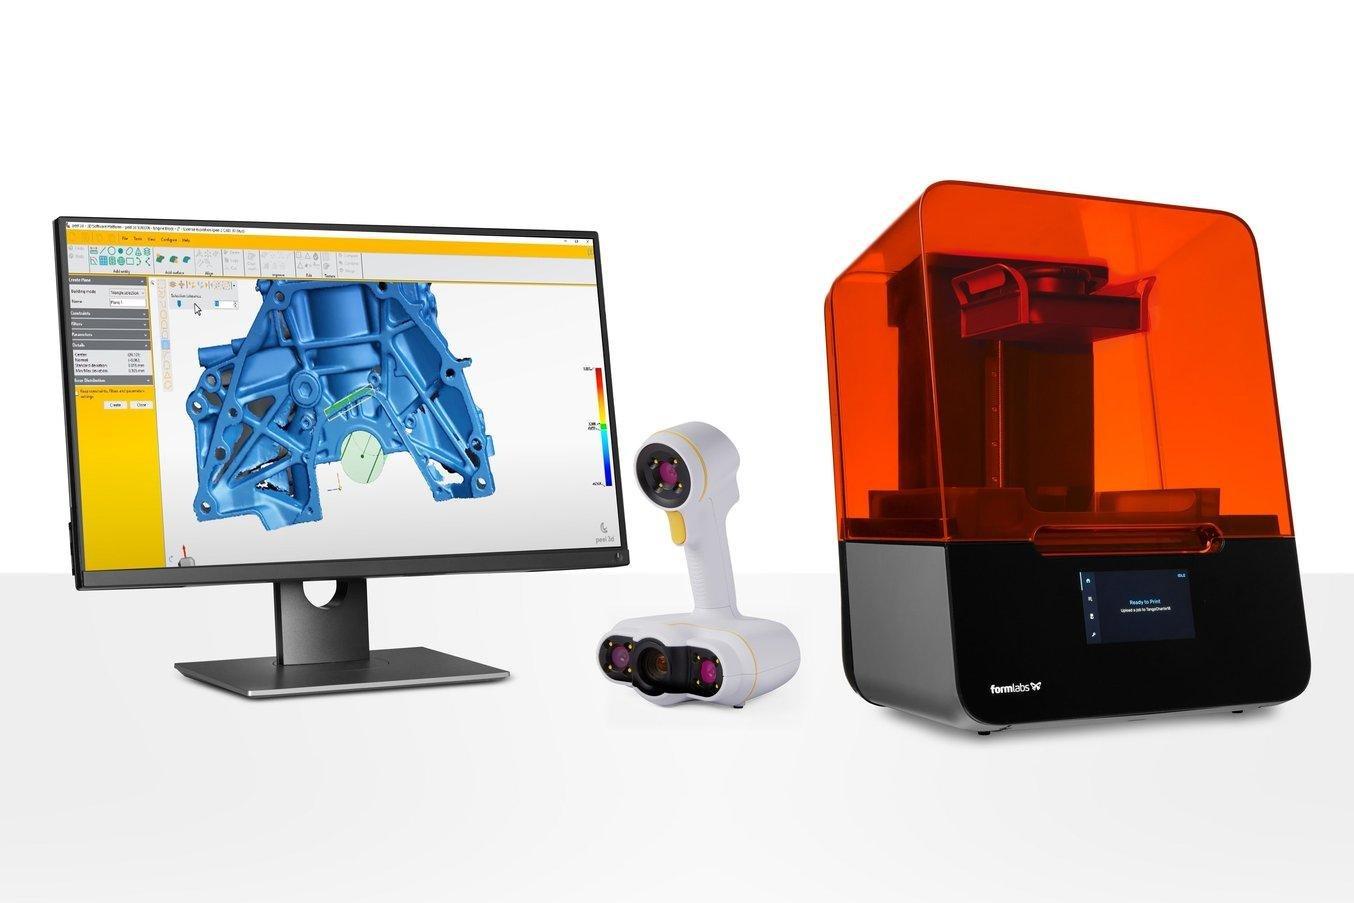 Les imprimantes 3D SLA de bureau sont idéales pour transformer les conceptions issues de la rétro-ingénierie en pièces physiques.